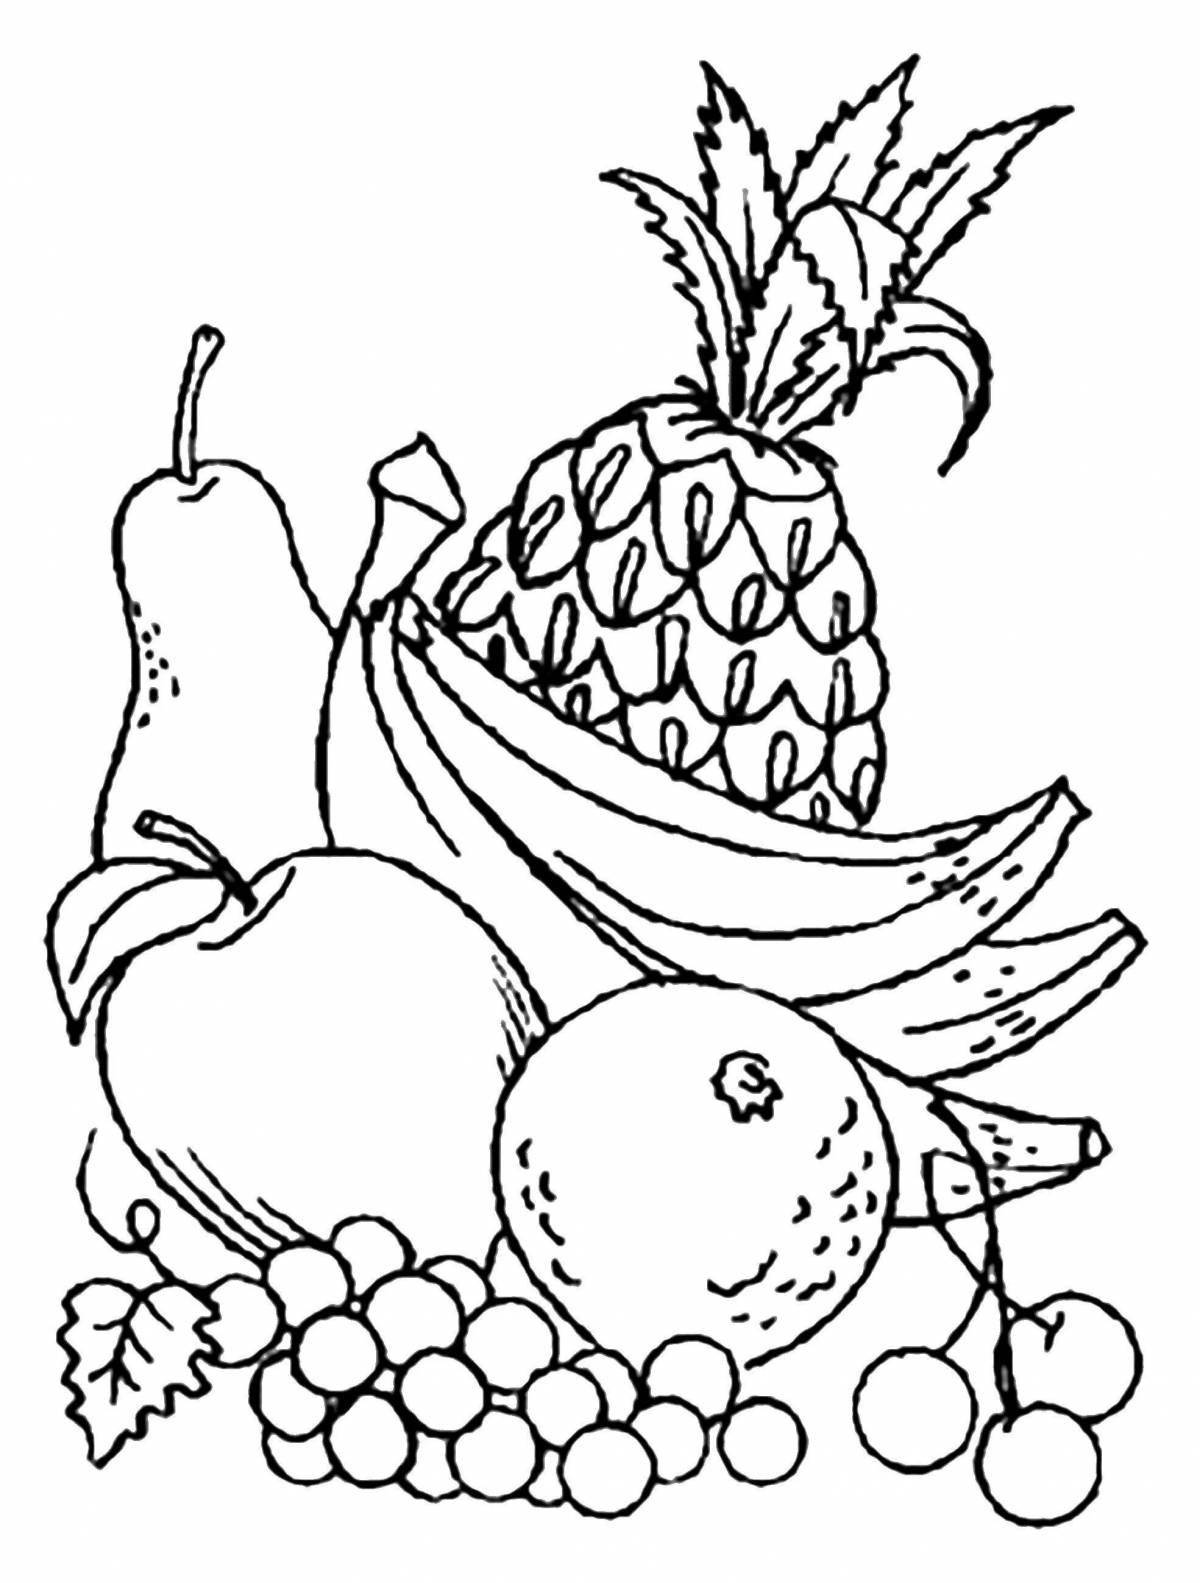 Увлекательный натюрморт из овощей и фруктов для самых маленьких